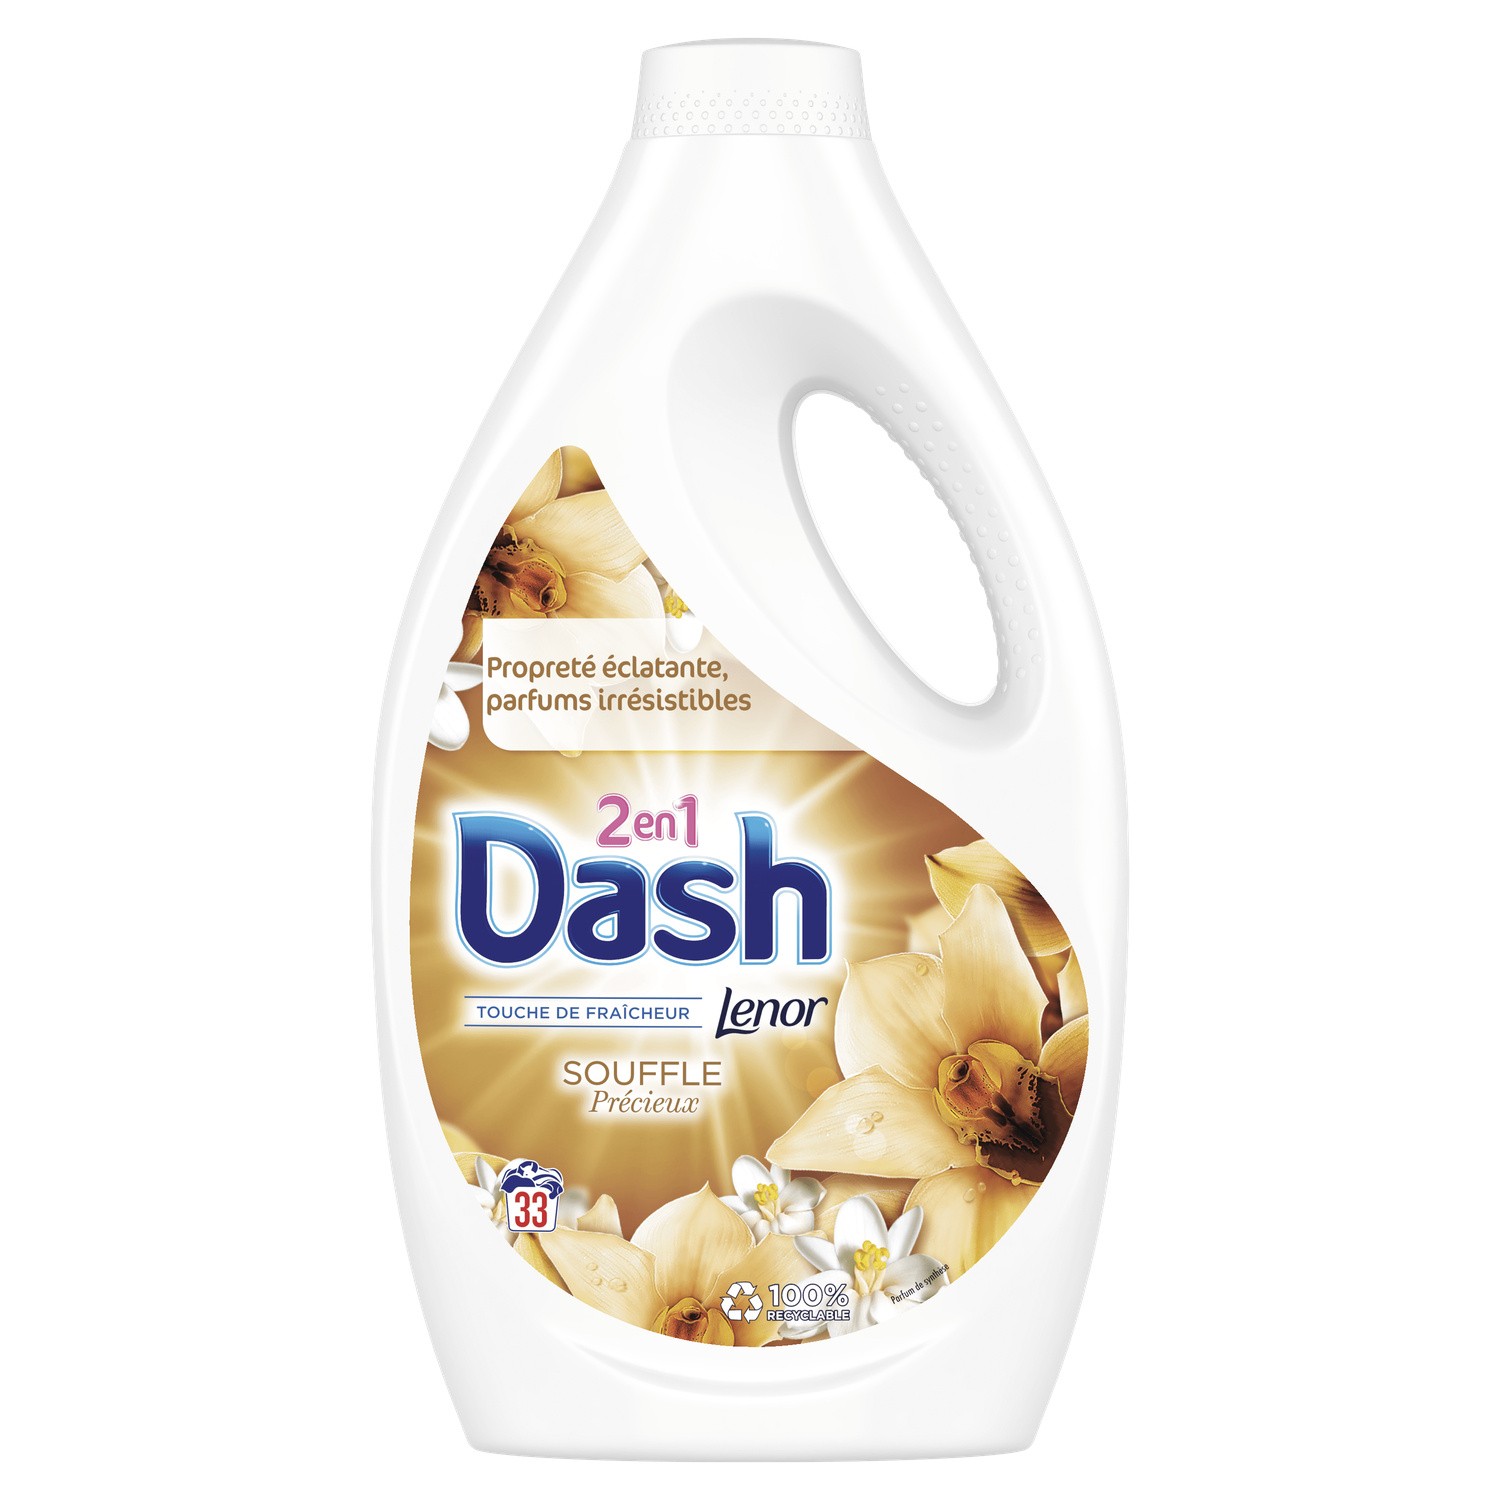 Promo Dash lessive liquide envolée d'air 35 lavages(b) chez Intermarché